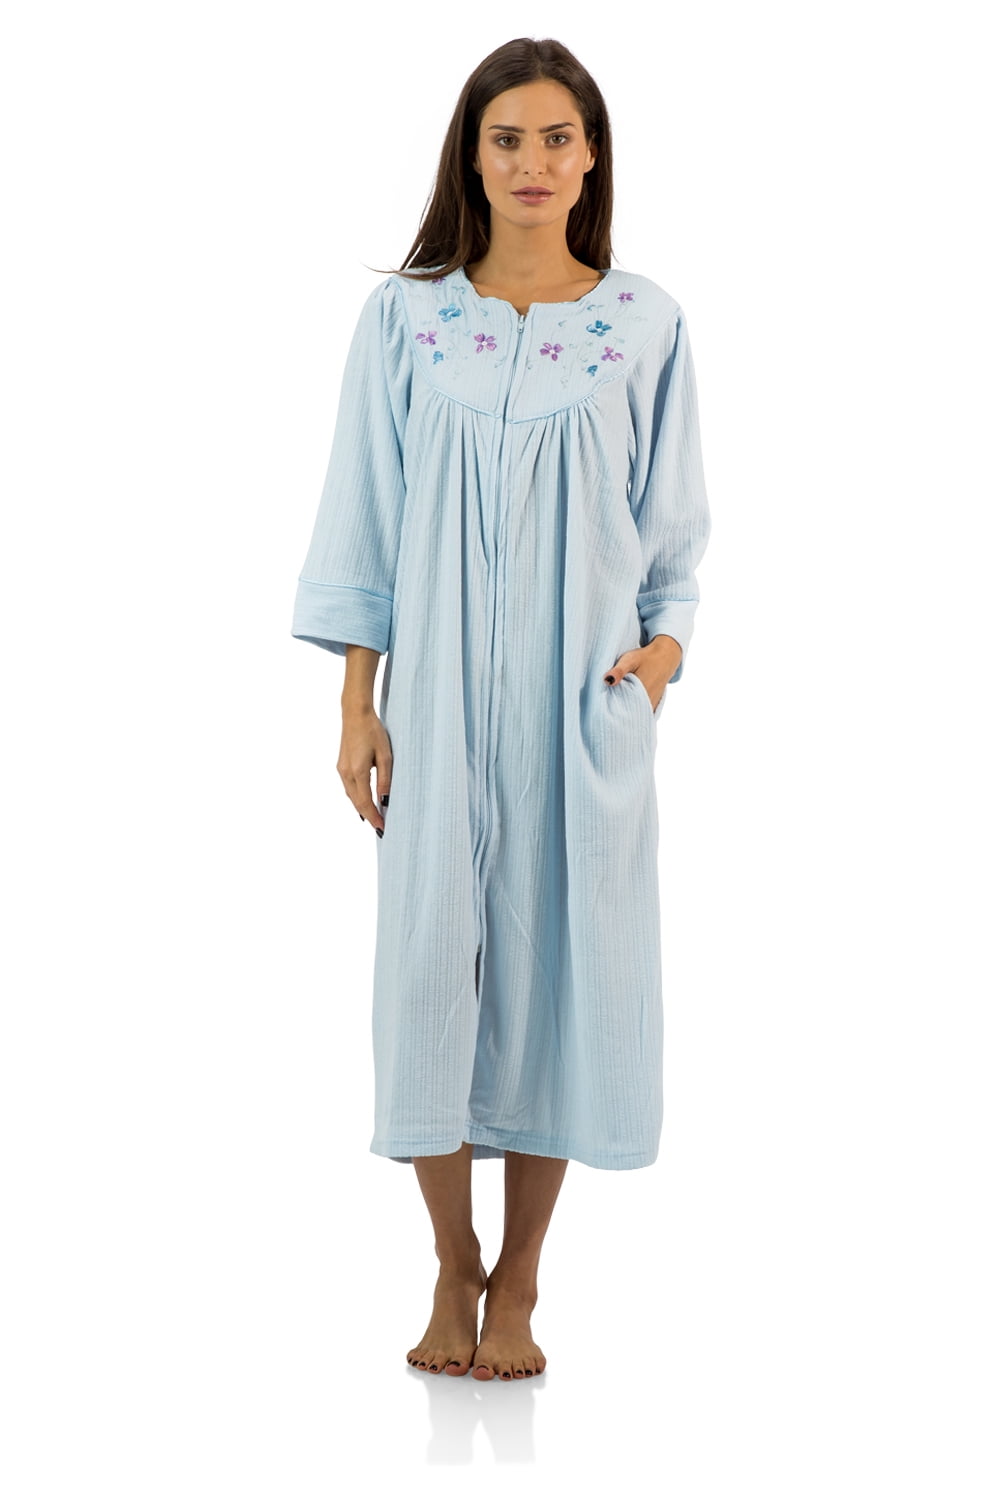 Casual Nights Womens Printed Micro Fleece Zip Up Long Sleeve Sleepwear Duster Robe 